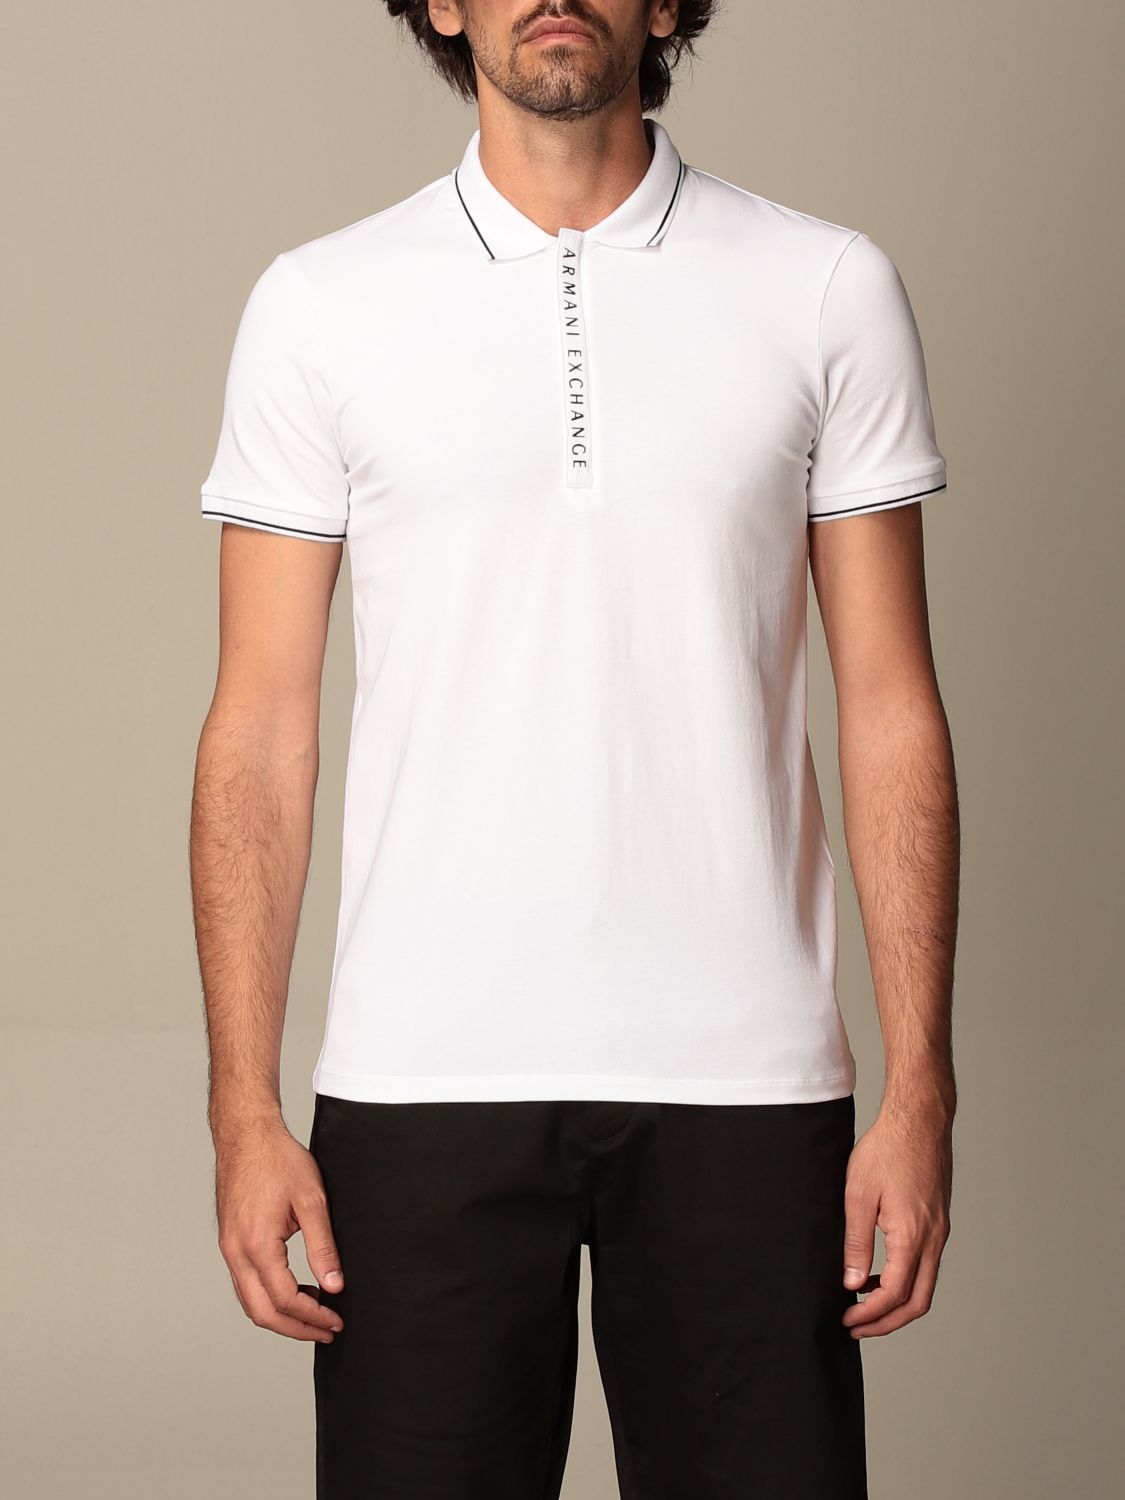 ARMANI EXCHANGE: cotton polo shirt with logo - White | Armani Exchange ...